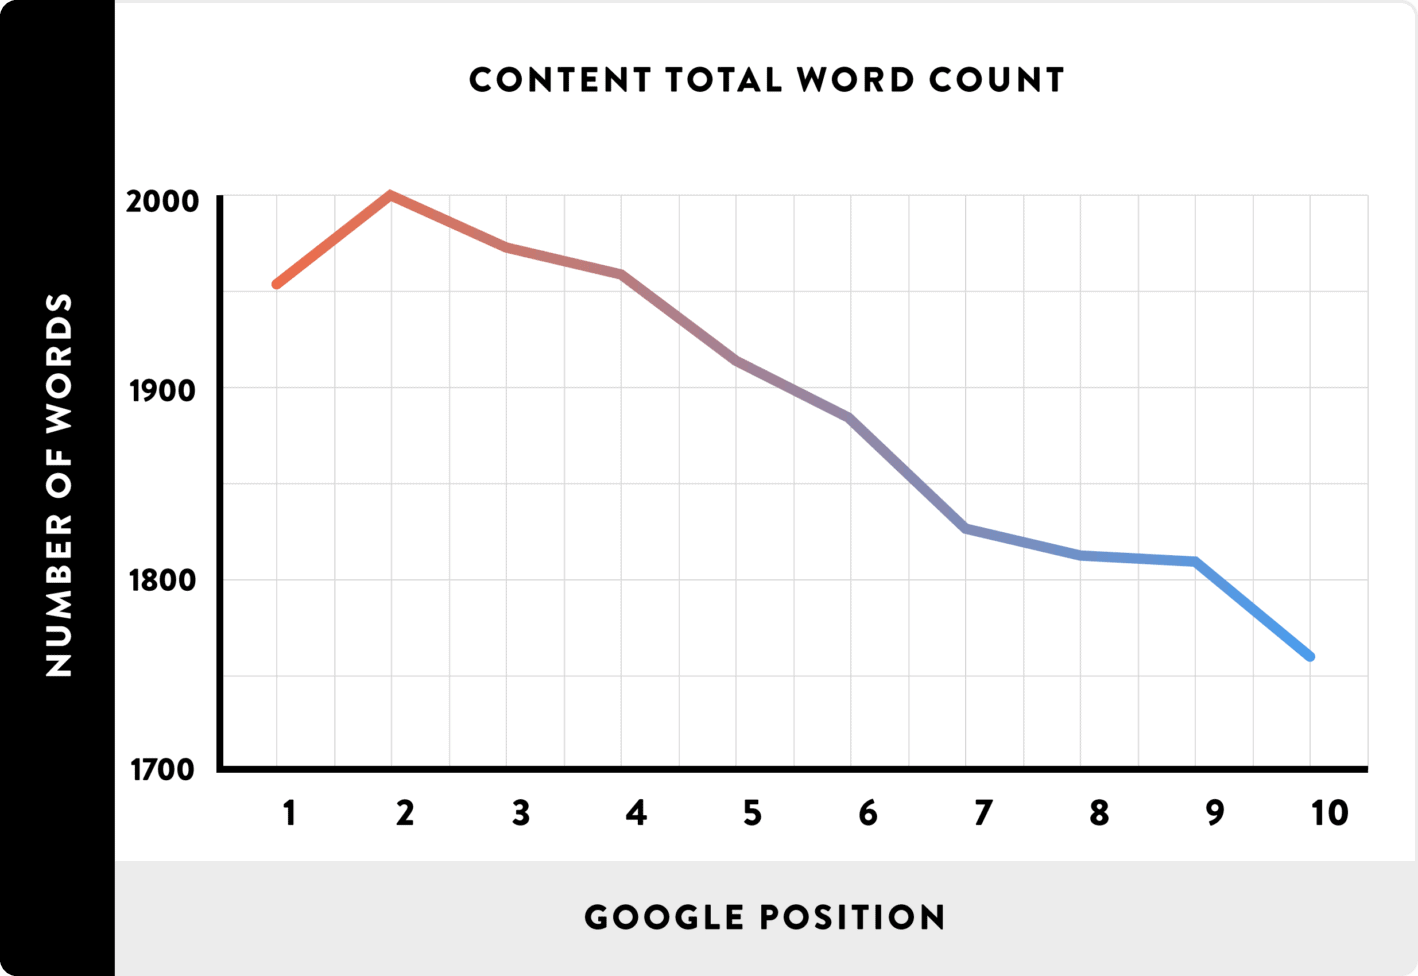 Backlinko Study on Word Count